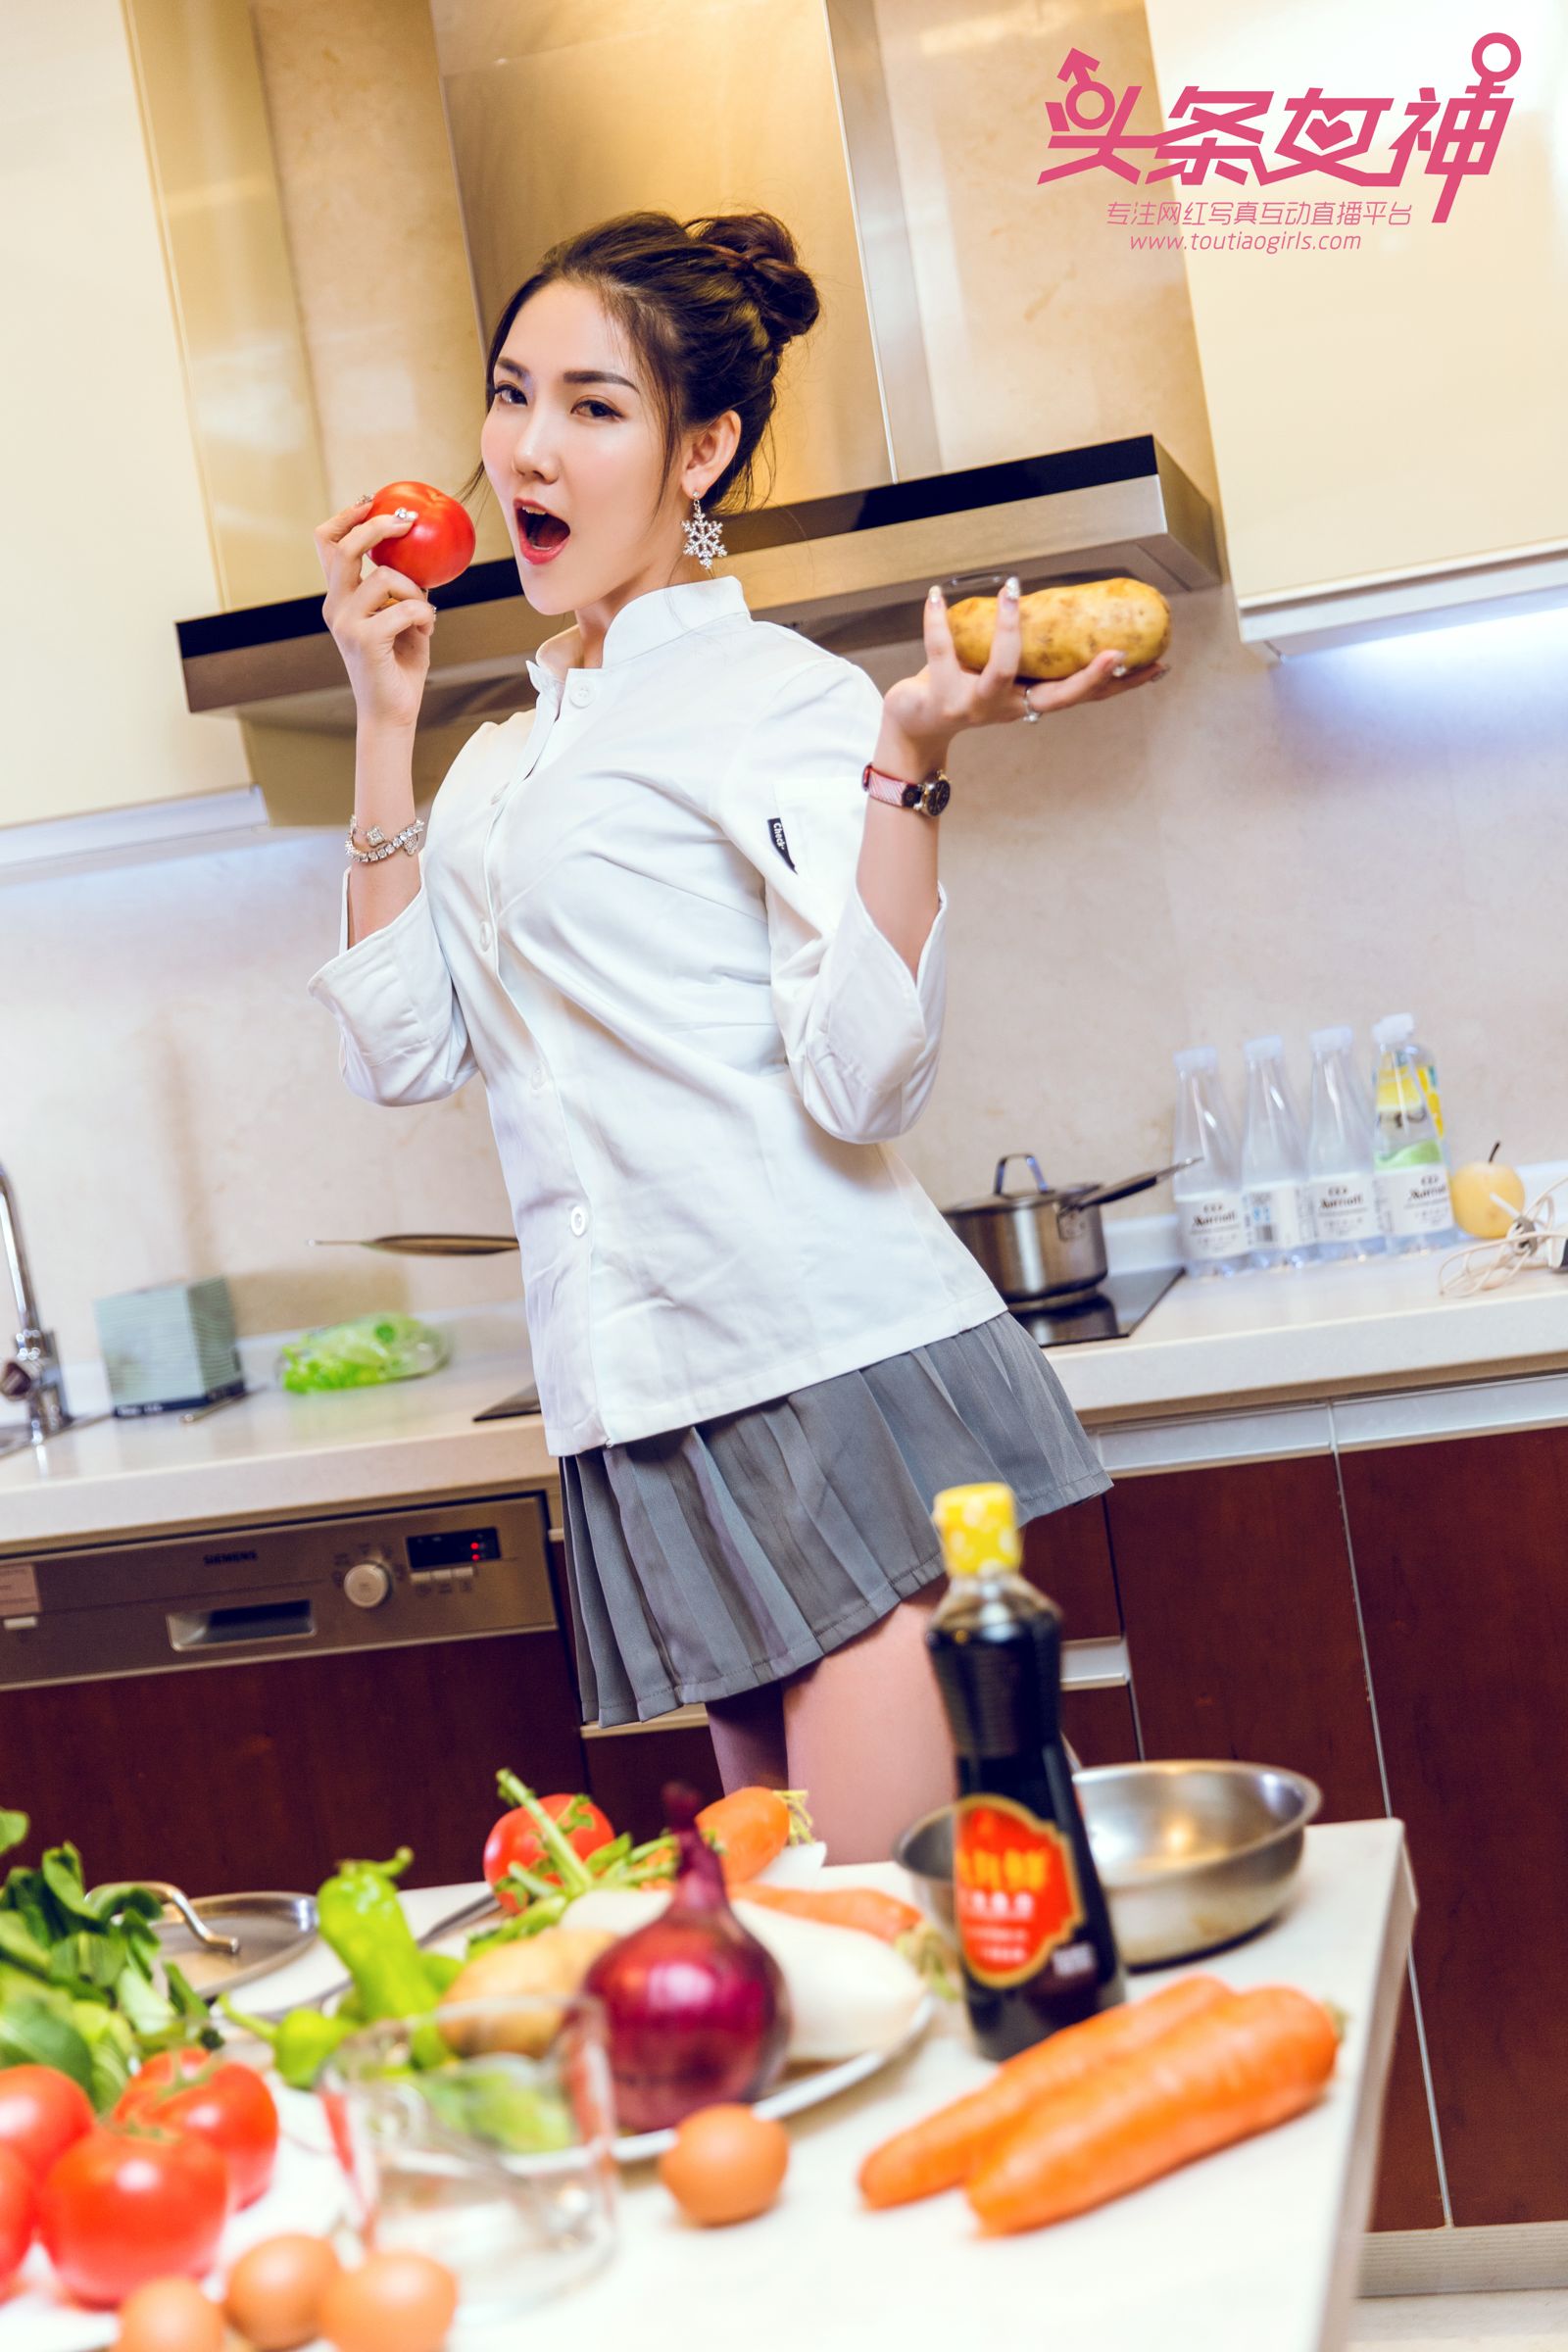 TouTiao Girls Kitchen Maid Feng Xue Jiao